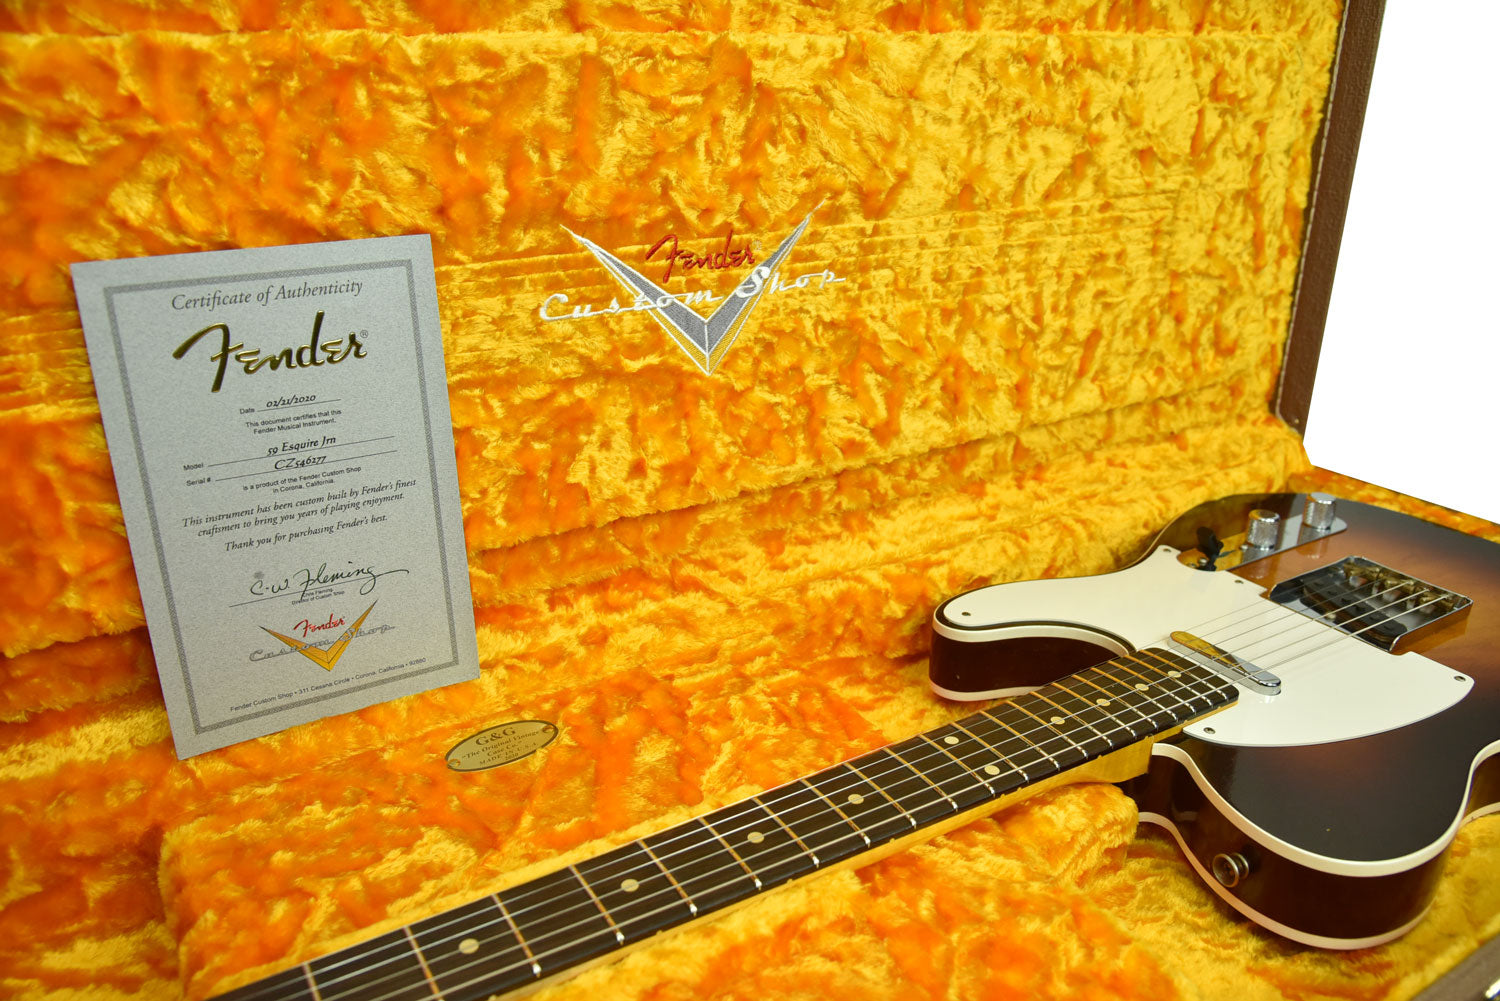 Fender Custom Shop 1959 Telecaster Custom NOS Guitar, Chocolate 3